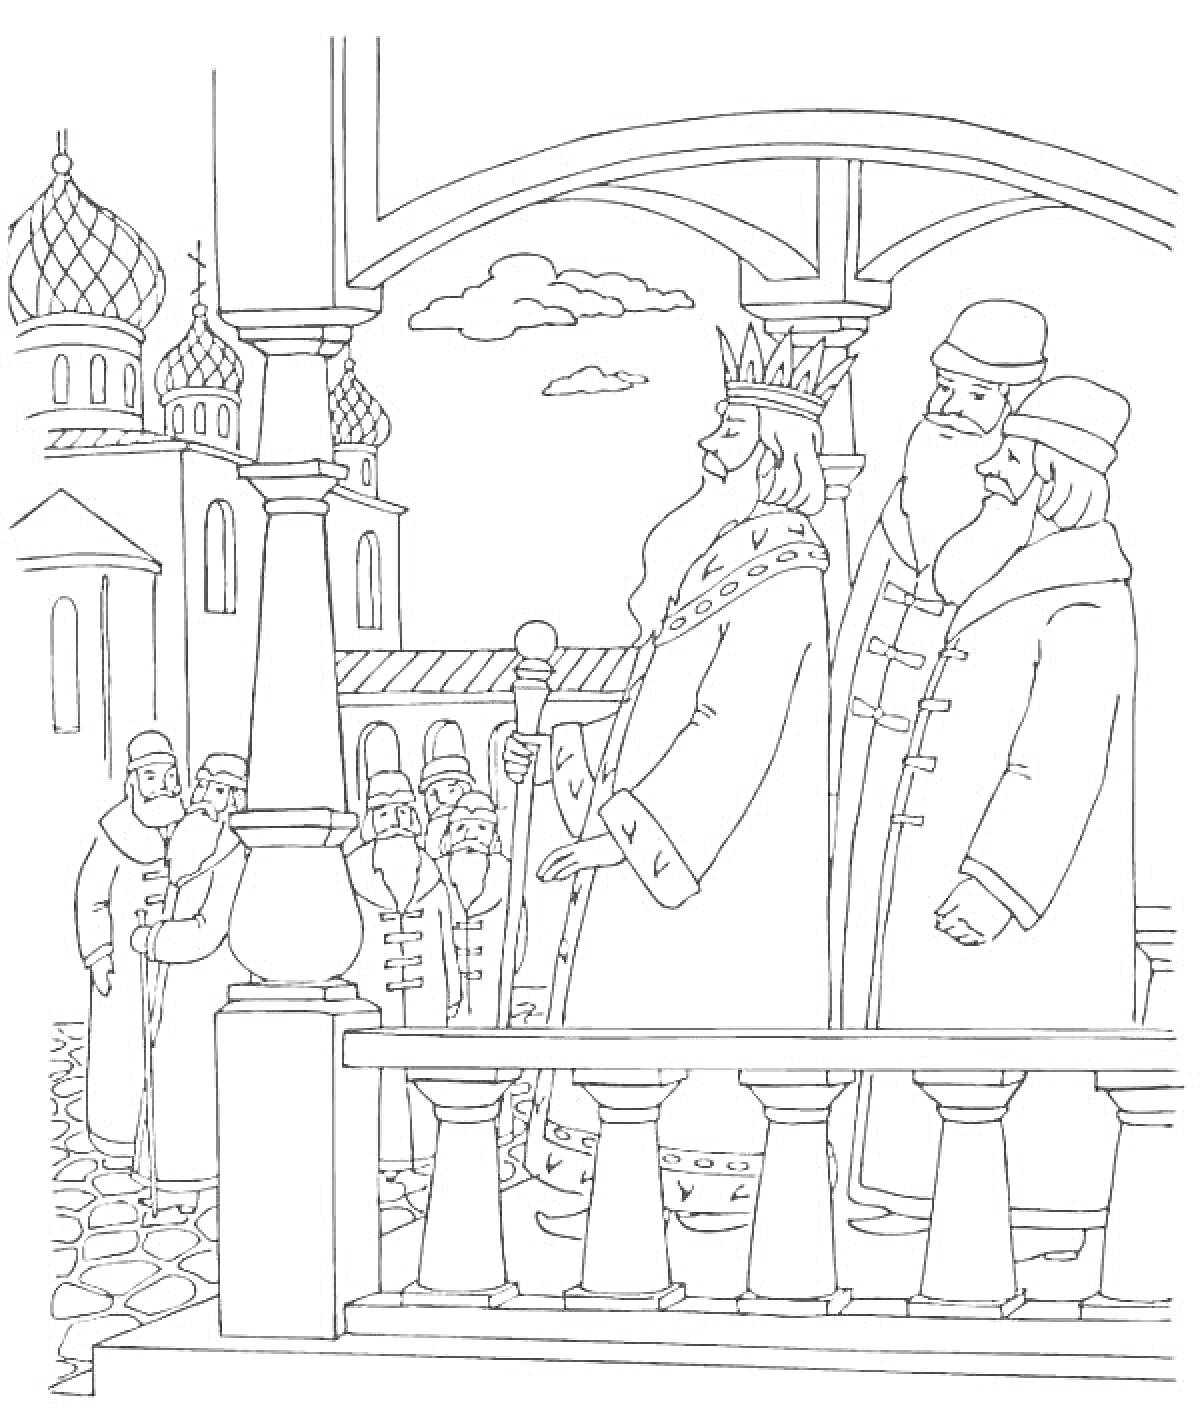 Раскраска Царь Салтан на крыльце дворца с приближенными, взгляд на второстепенных персонажей вдали, архитектура с куполами в минимализме